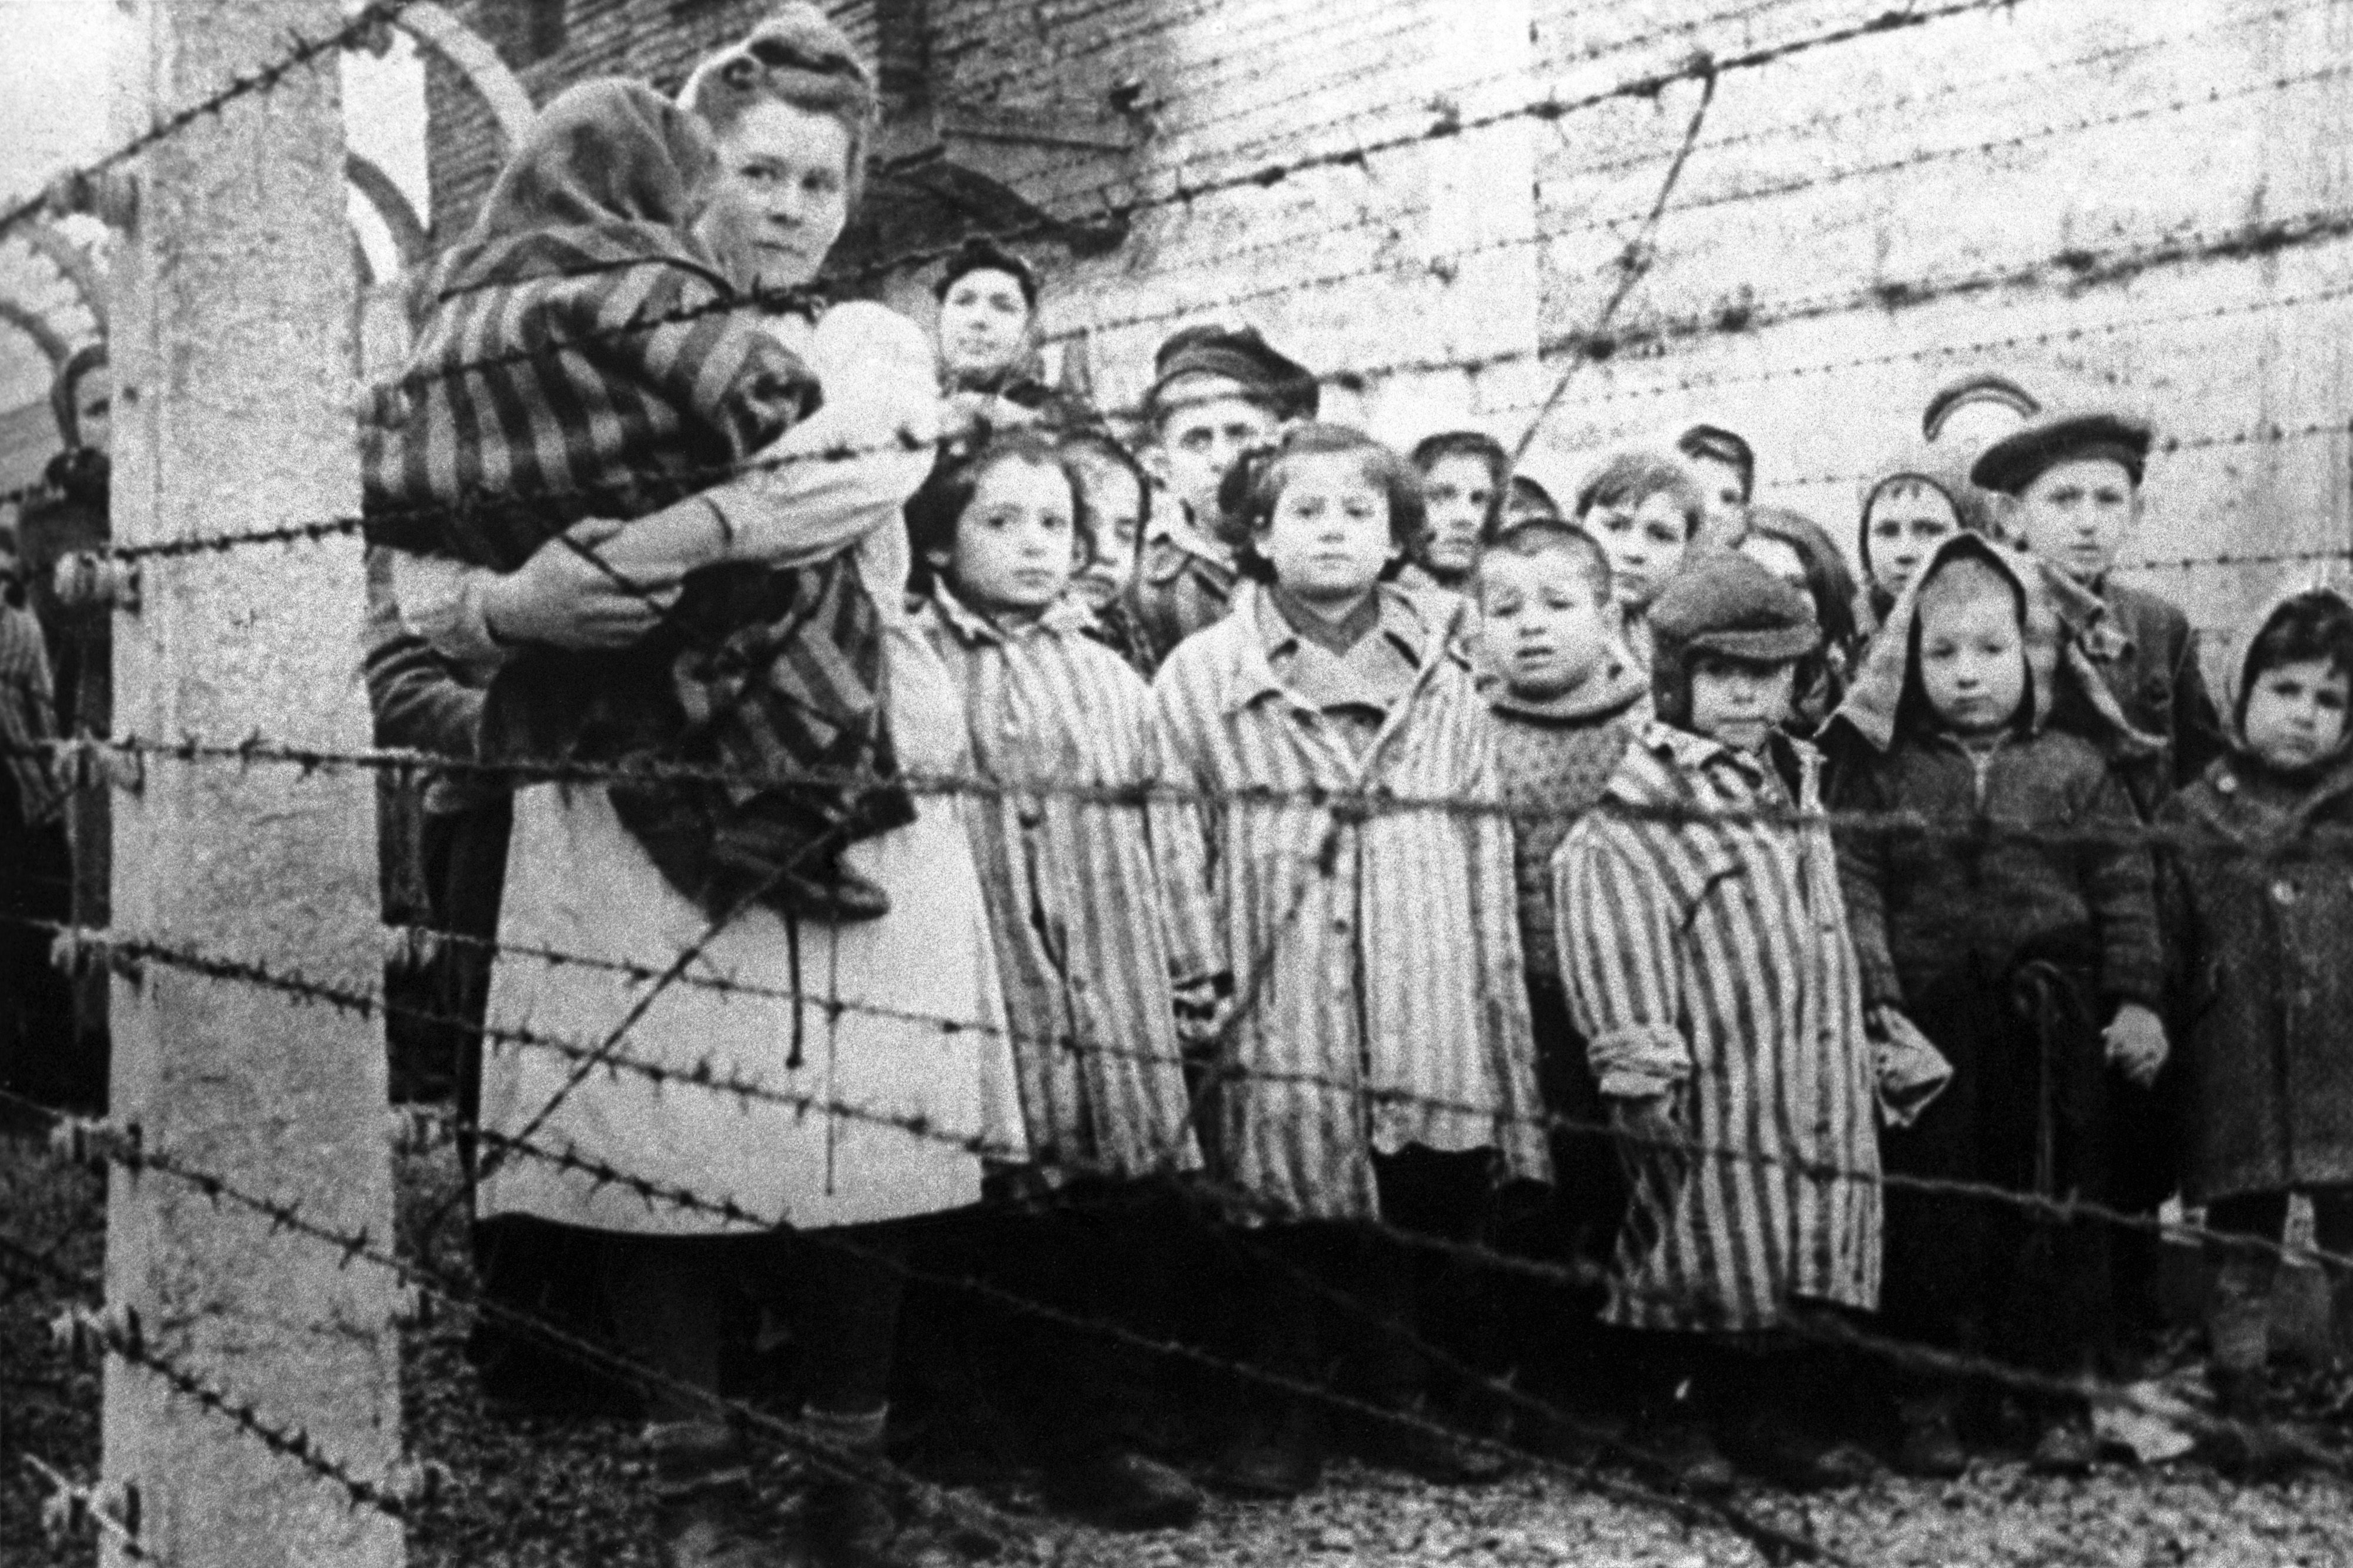 Советские концентрационные лагеря. Детские концентрационные лагеря Германии. Дети узники концлагерей ВОВ. Освобождение узников Освенцима 1945.